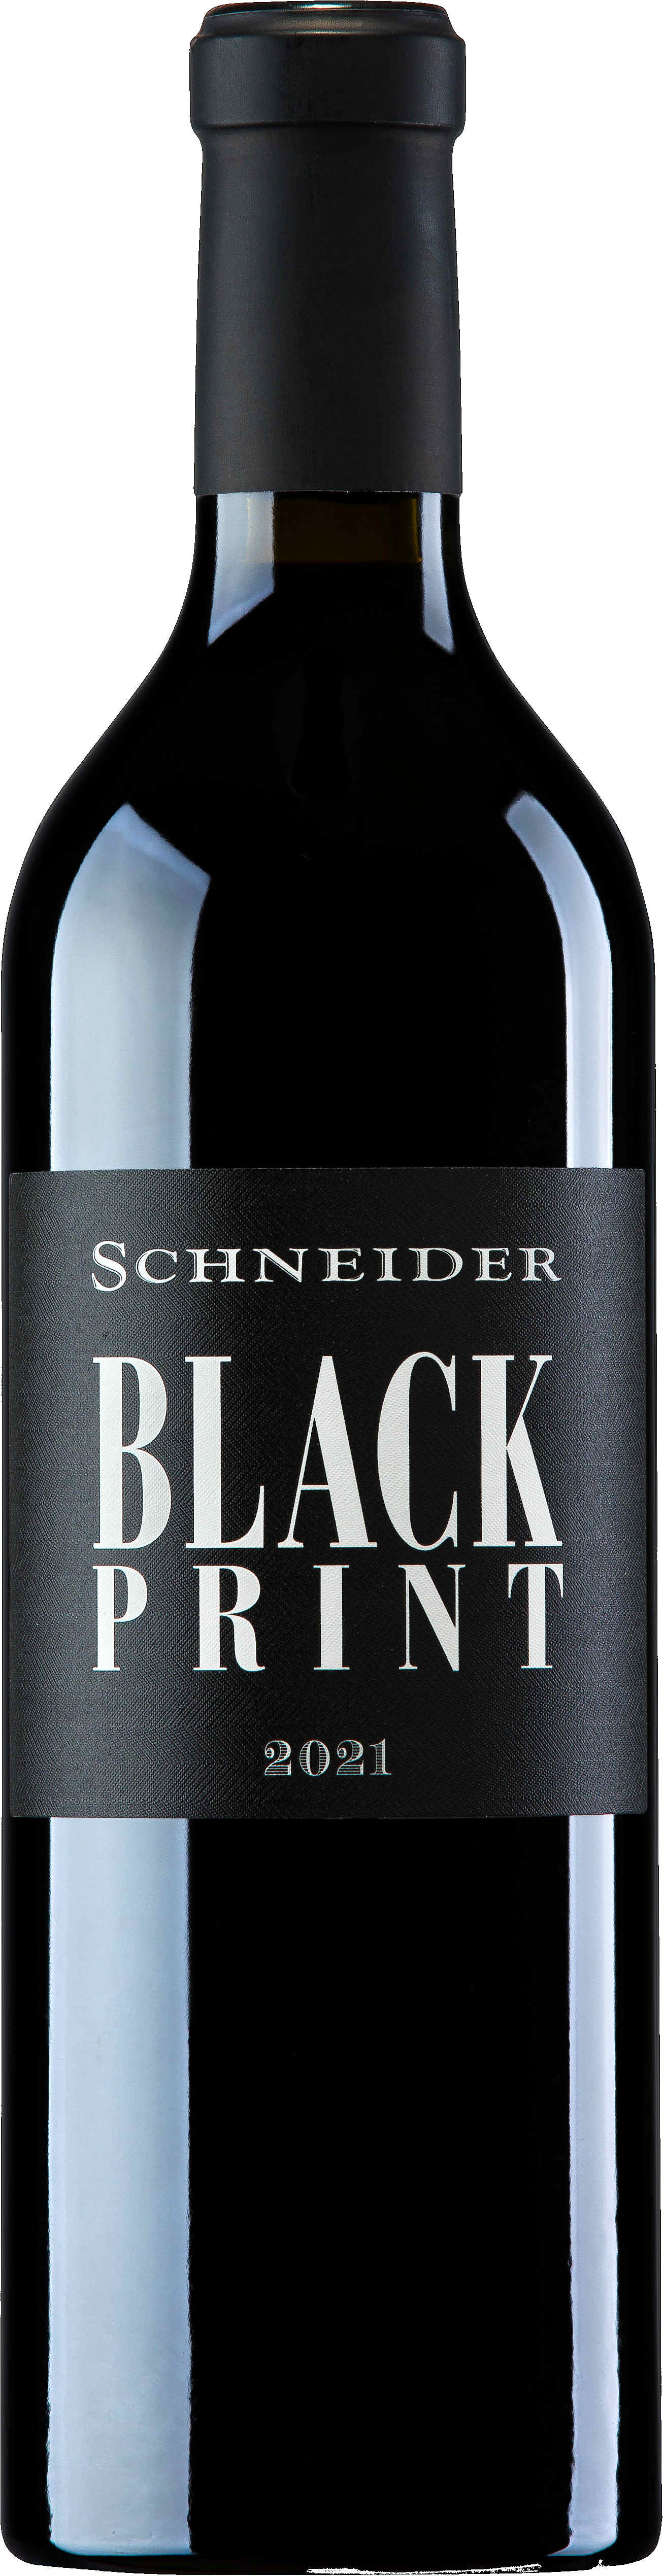 Markus Schneider Black Print